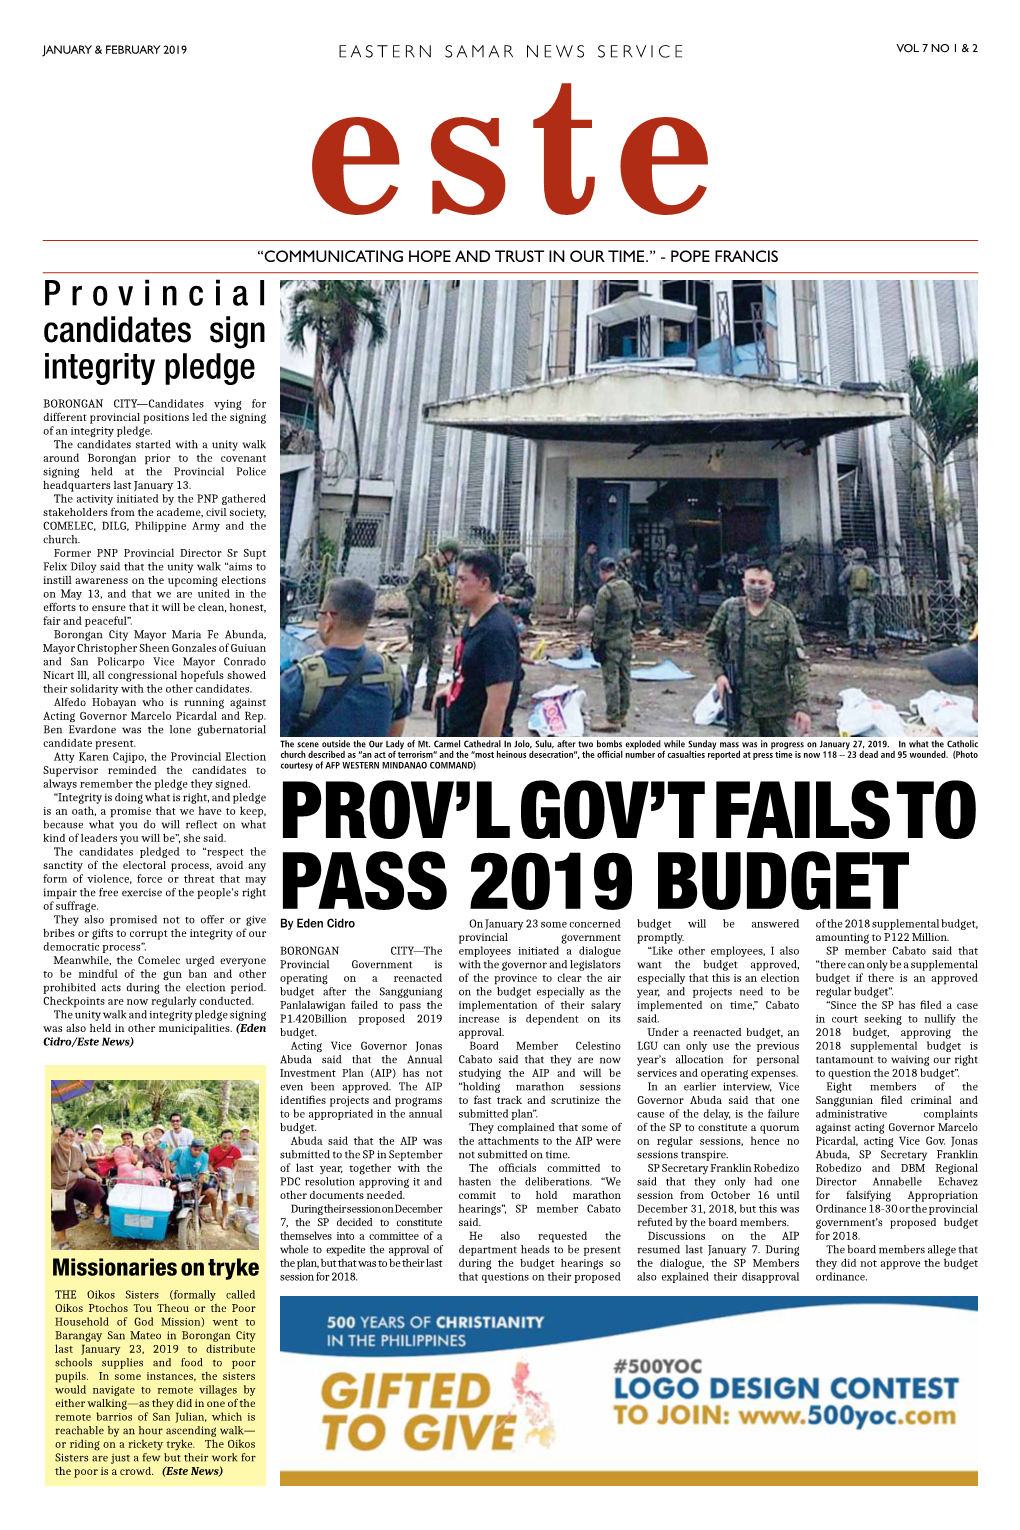 Prov'l Gov't Fails to Pass 2019 Budget